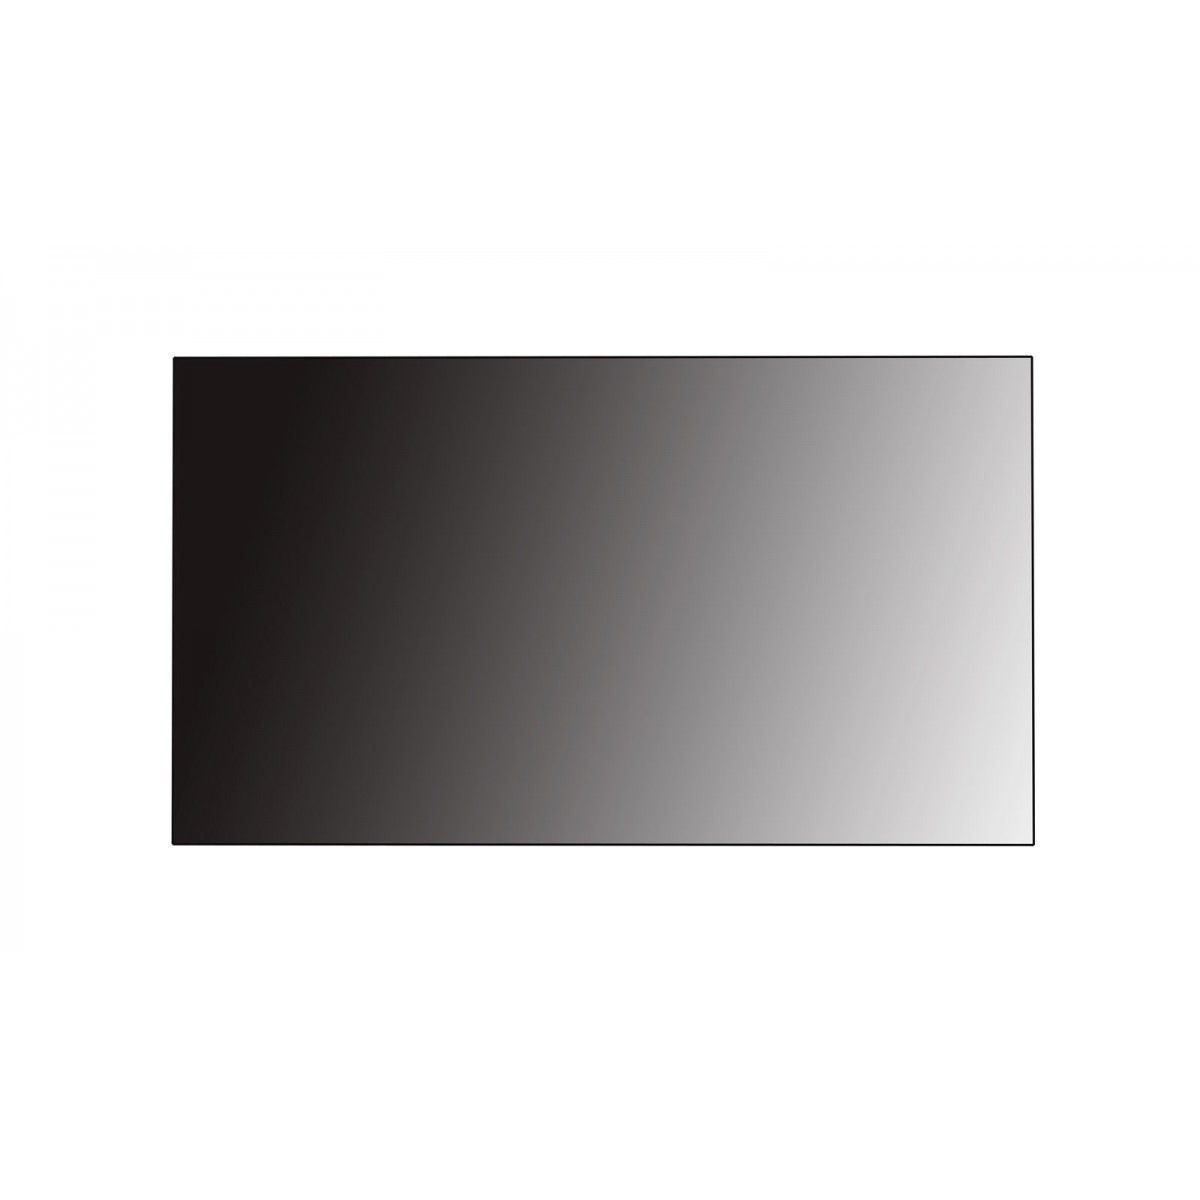 LG 55VM5B-A - LCD - 500 cd/m² - 139.7 cm (55) - 1920 x 1080 pixels - Full HD - IPS